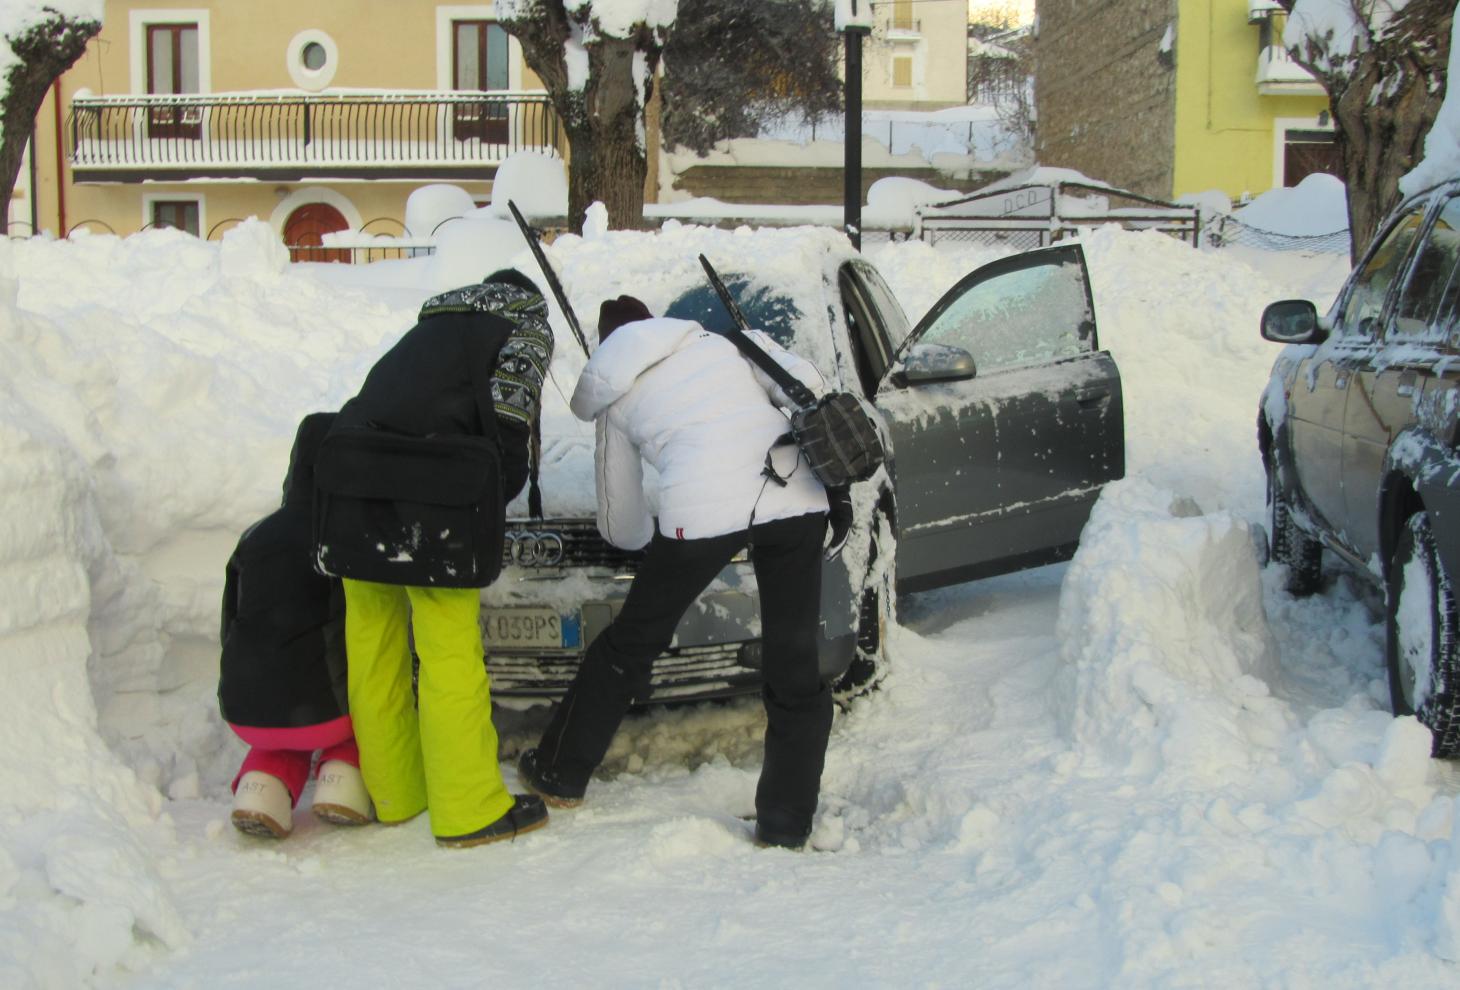 Danni alleautomobili per troppa neve